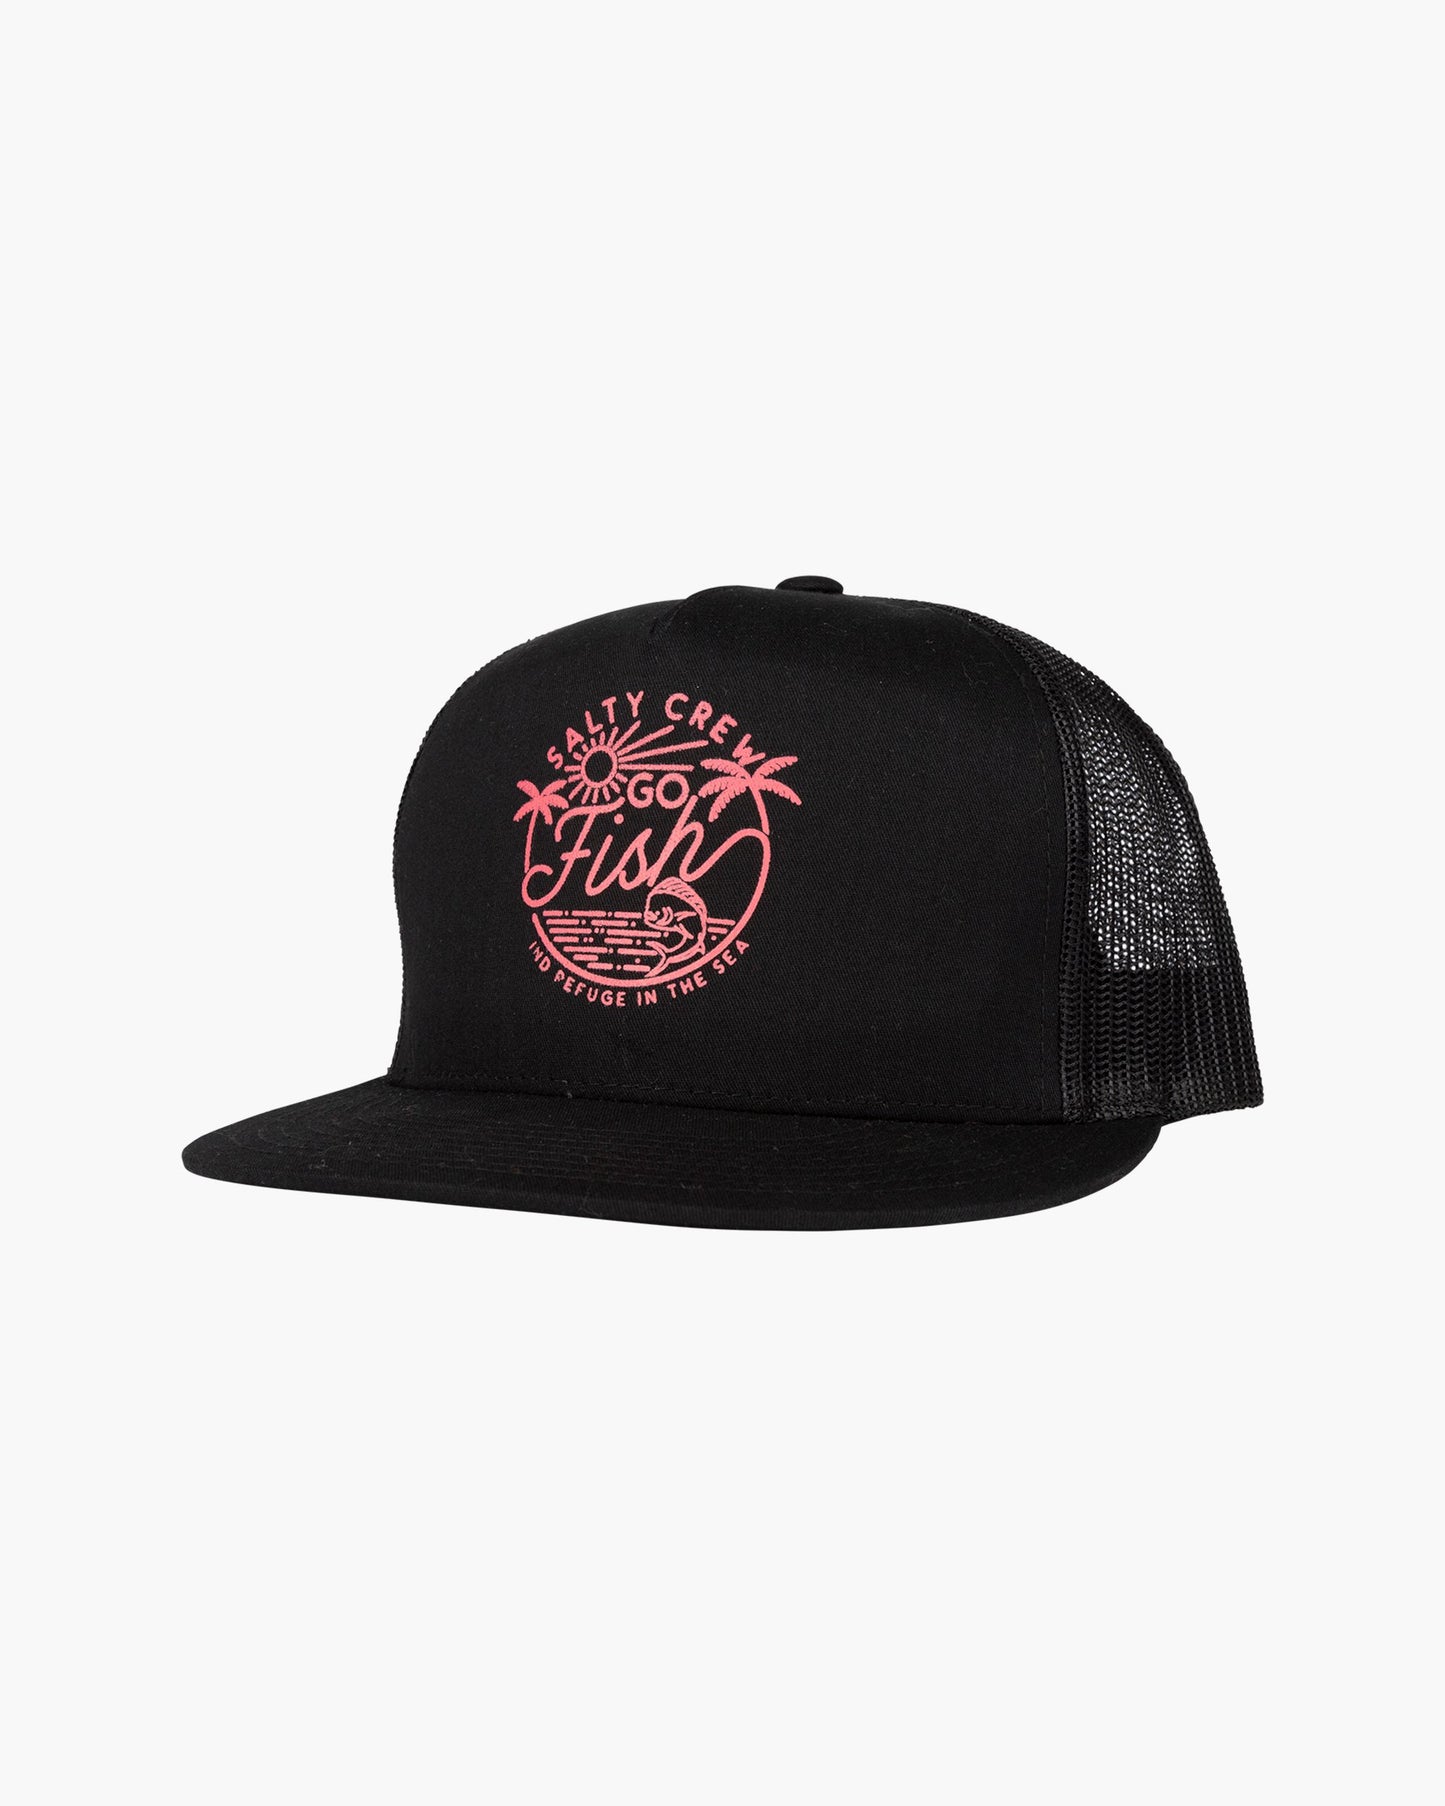 Salty Crew Women's Caps - Go Fish Black Trucker Hat